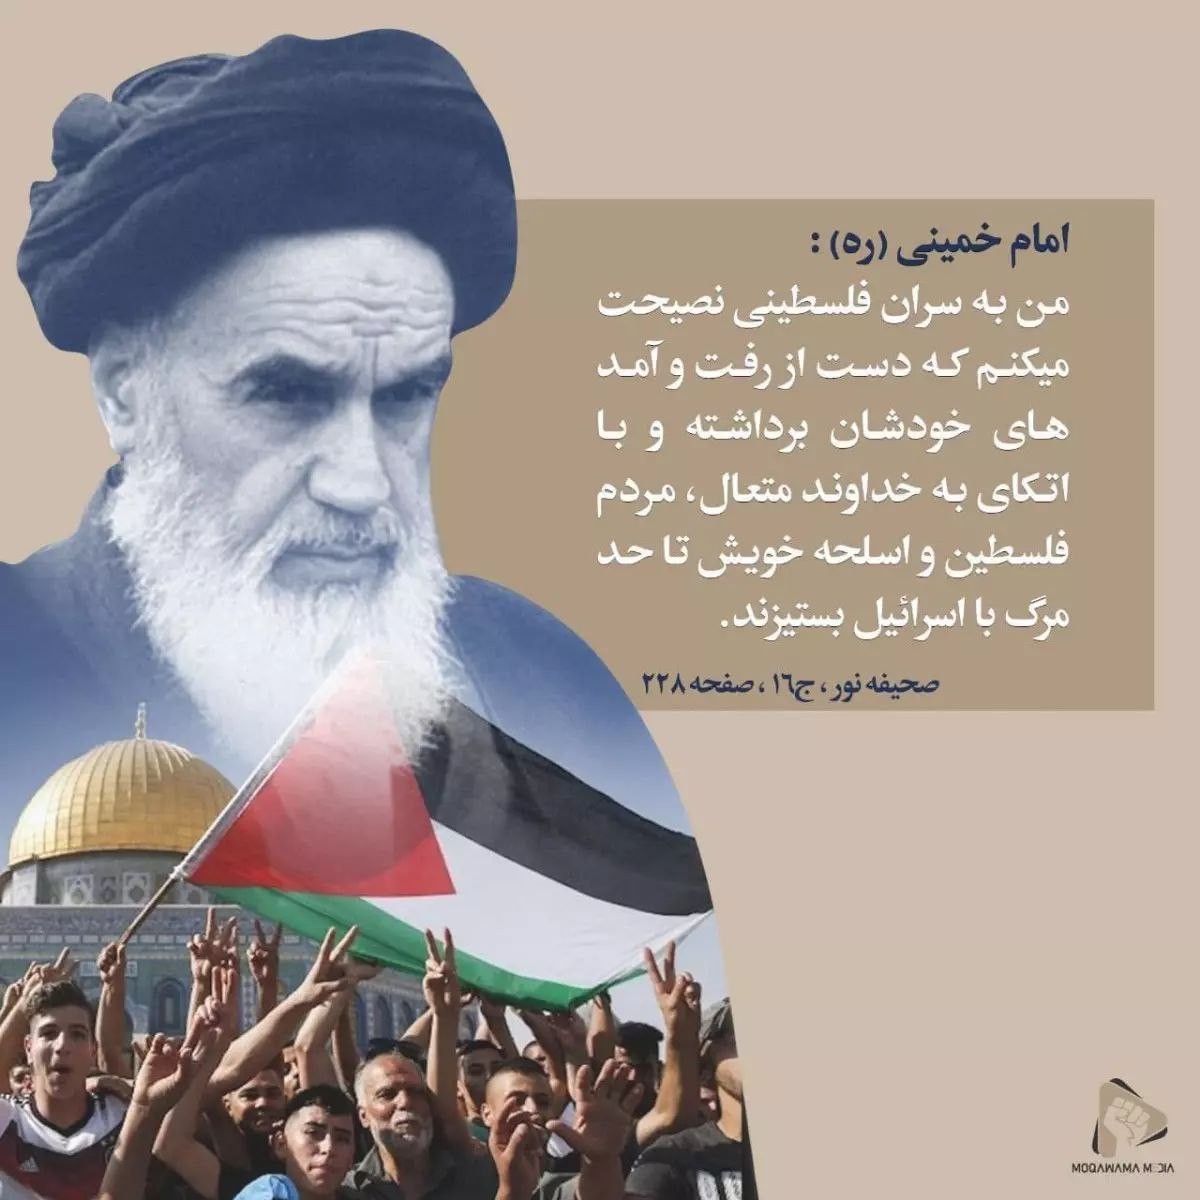 امام خمینی : من به سران فلسطینی نصیحت میکنم